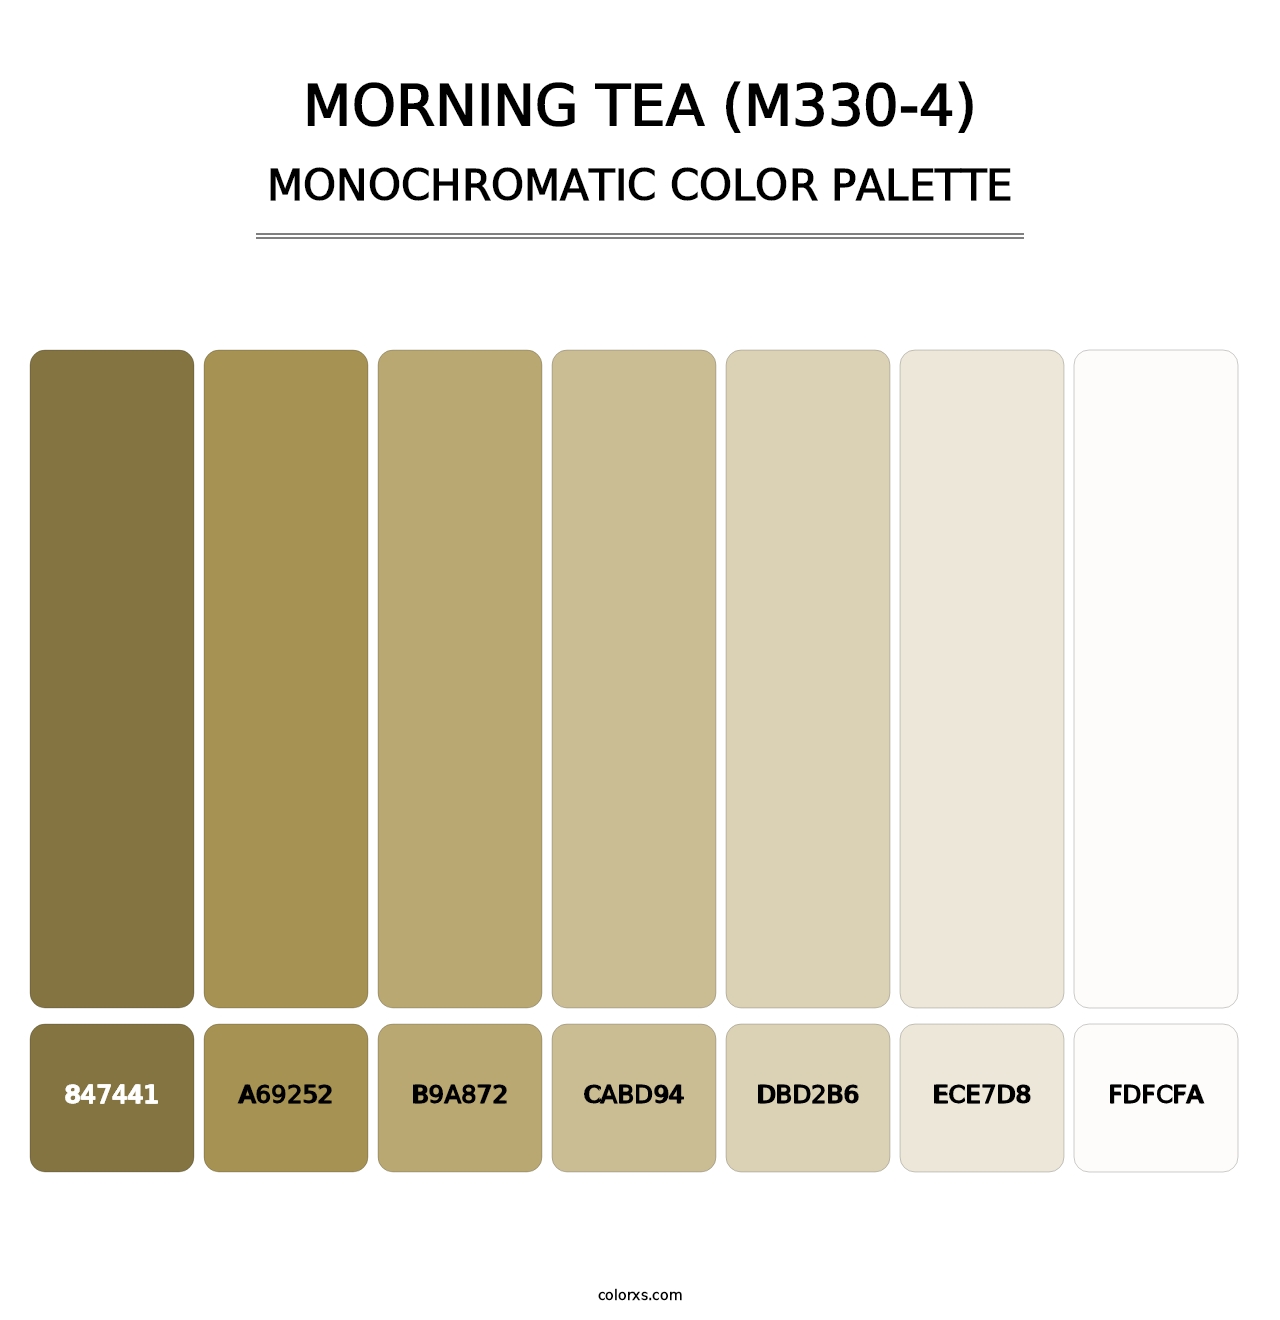 Morning Tea (M330-4) - Monochromatic Color Palette